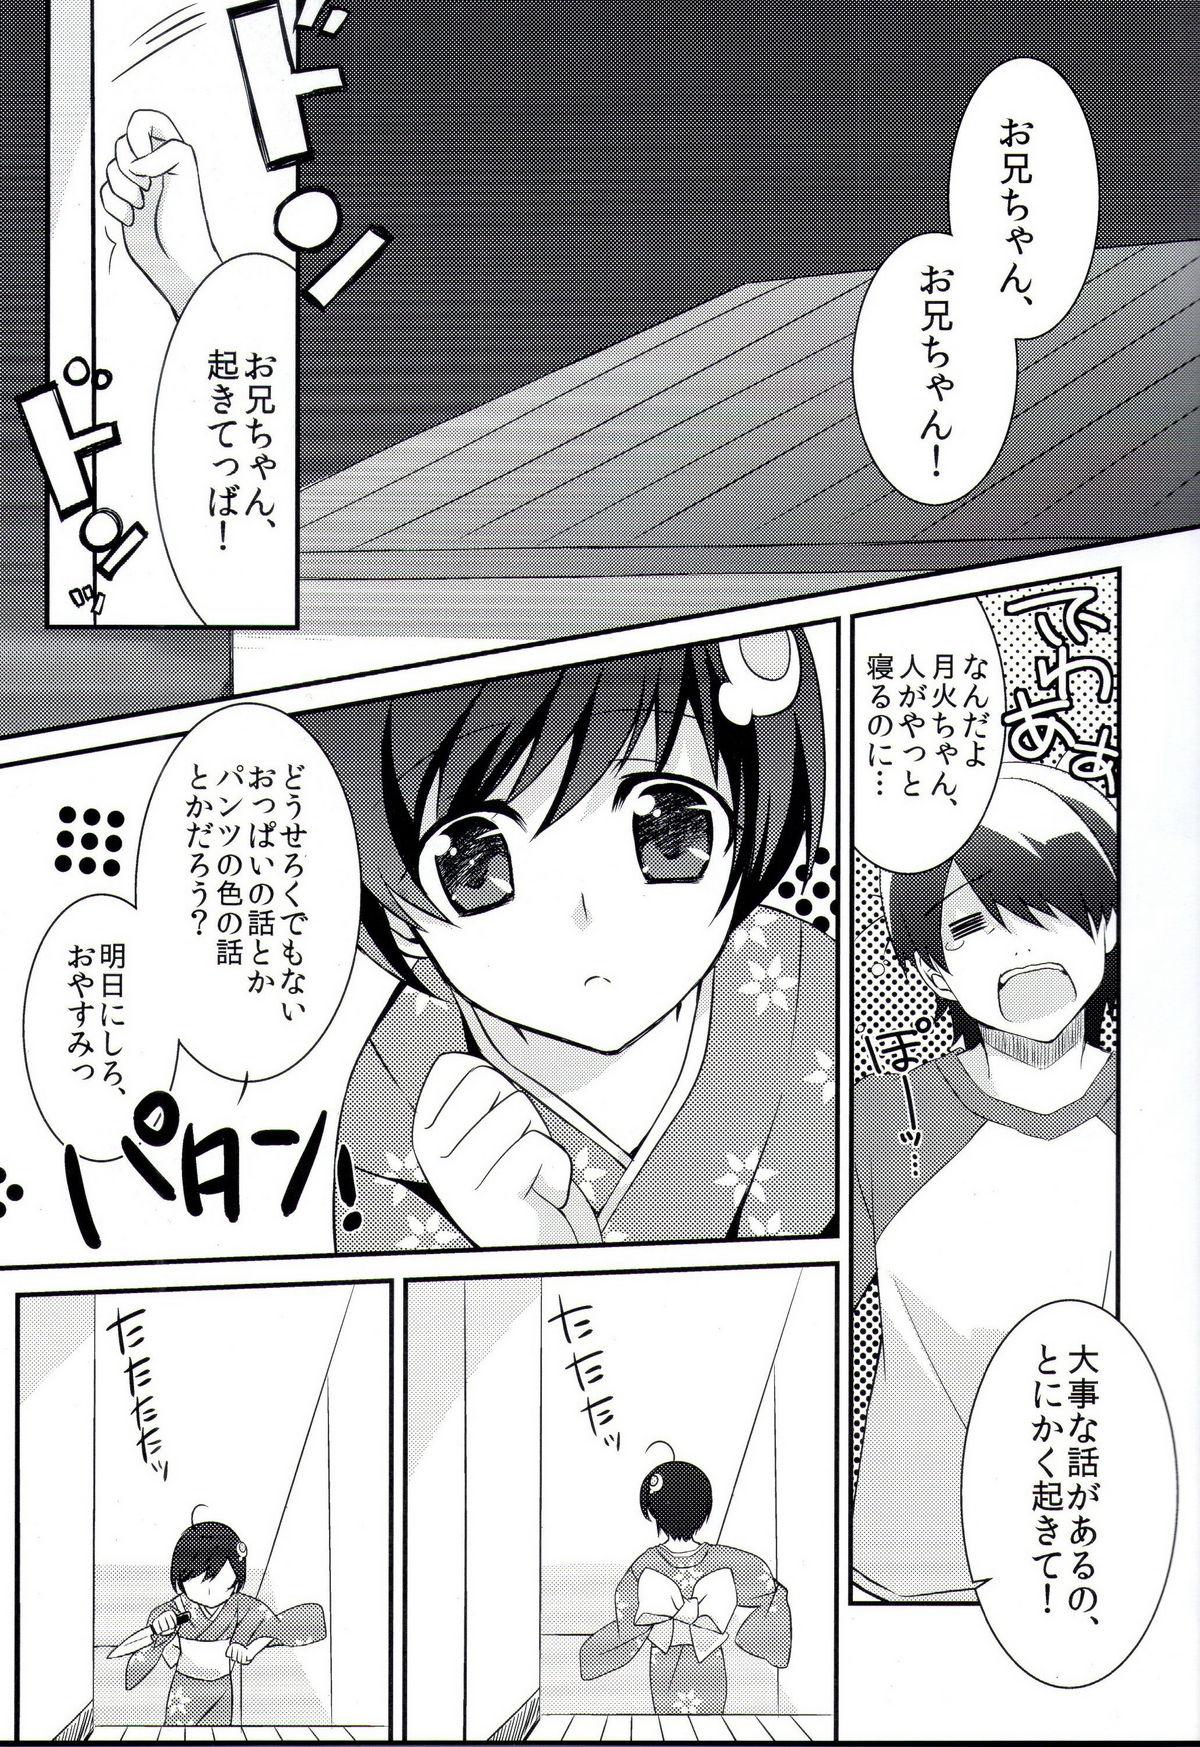 Coroa Boku to Karen to Tsukihi ga Shuraba sugiru - Bakemonogatari Facials - Page 2